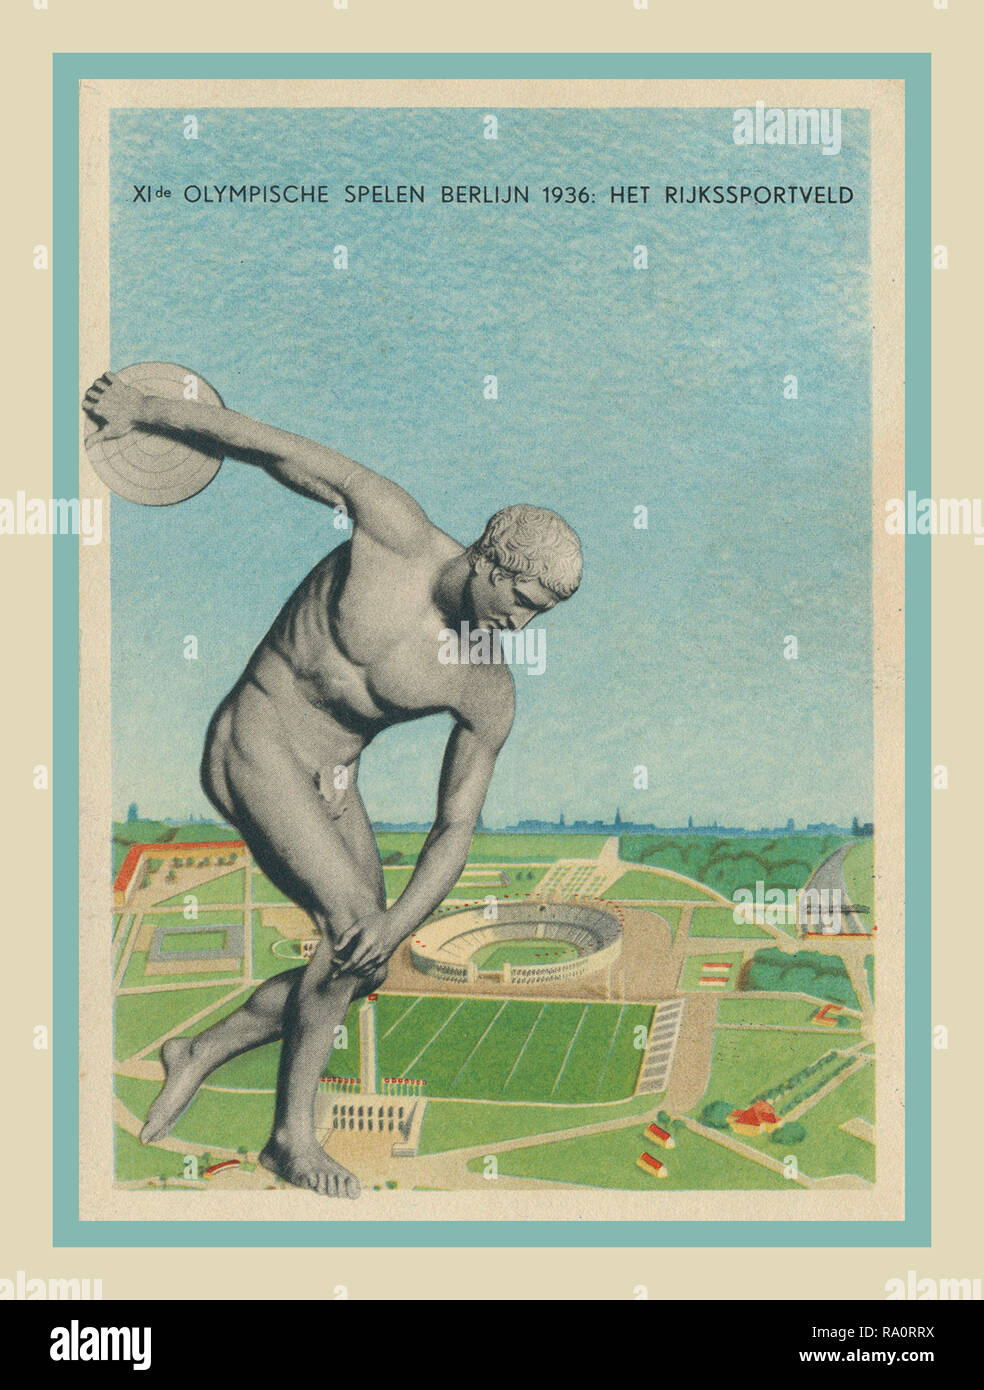 Vintage 1936 Carte postale de l'Allemagne nazie olympique Jeux Olympiques de Berlin illustrant les jeux olympiques de 1936 à Berlin avec lanceur complexe traditionnel lancer du disque à l'avant-plan. Banque D'Images